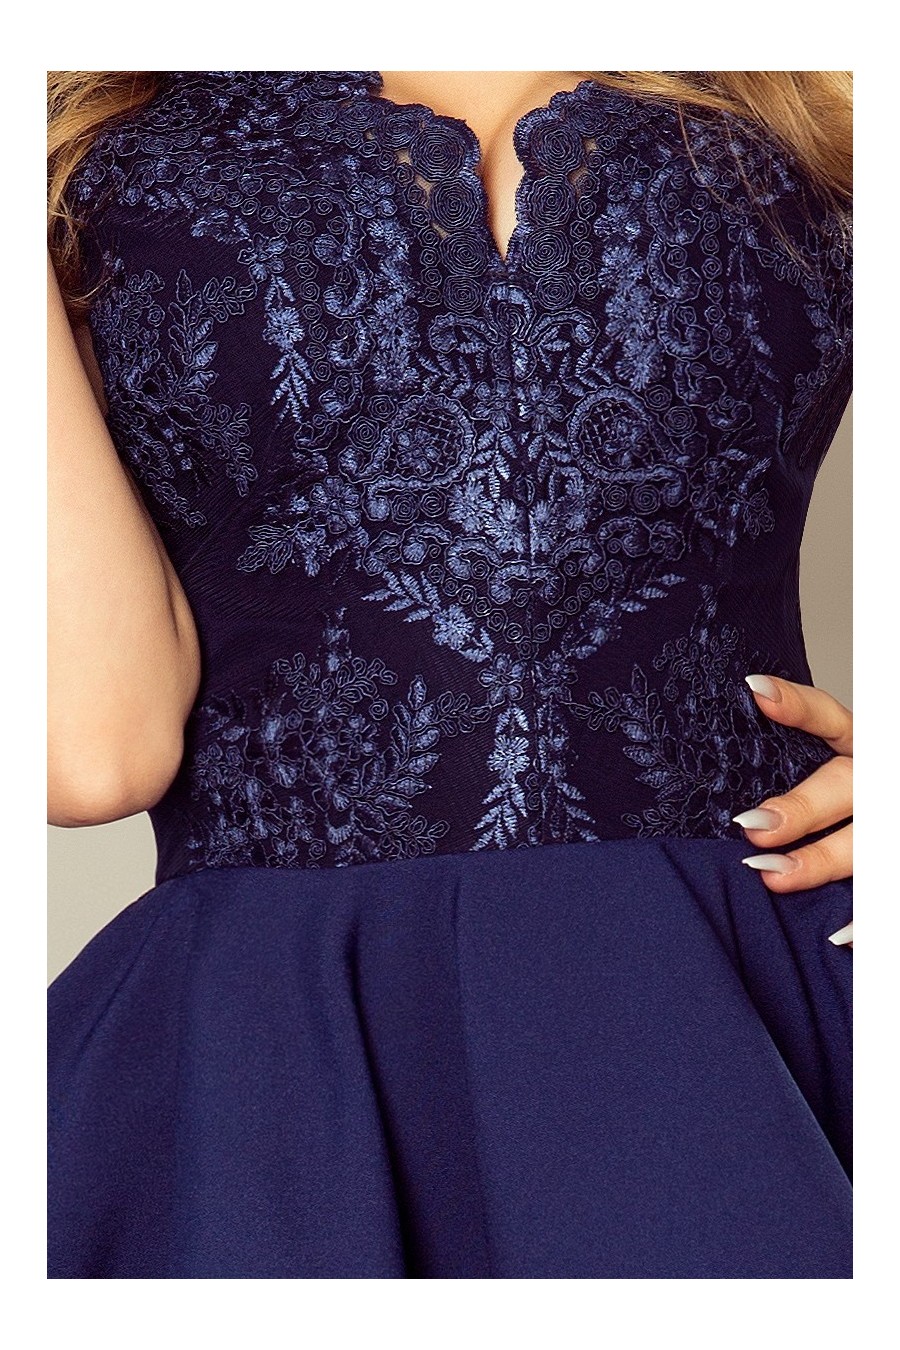 200-2 CHARLOTTE - Exkluzivní šaty s krajkou výstřihem - tmavě modrá